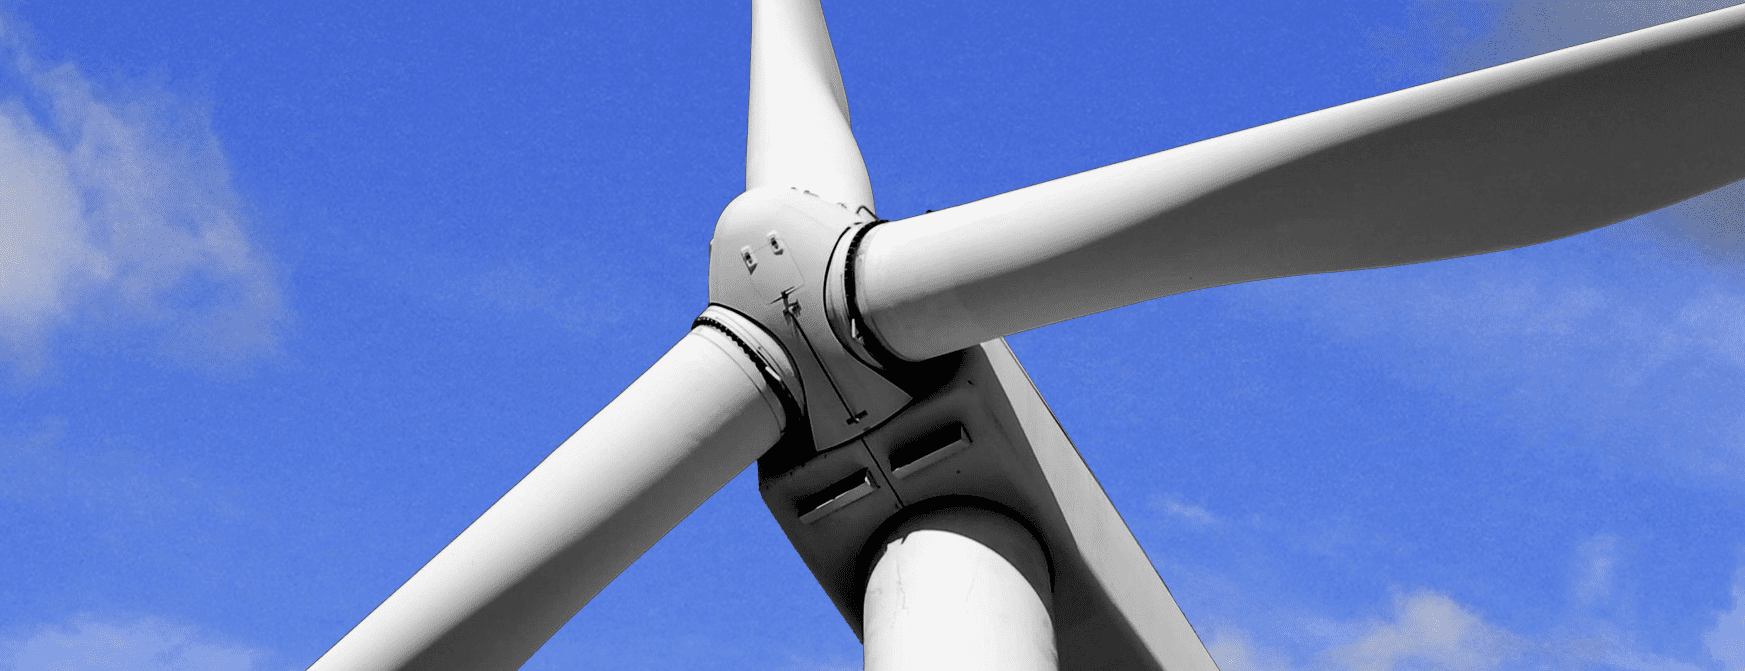 风力发电行业